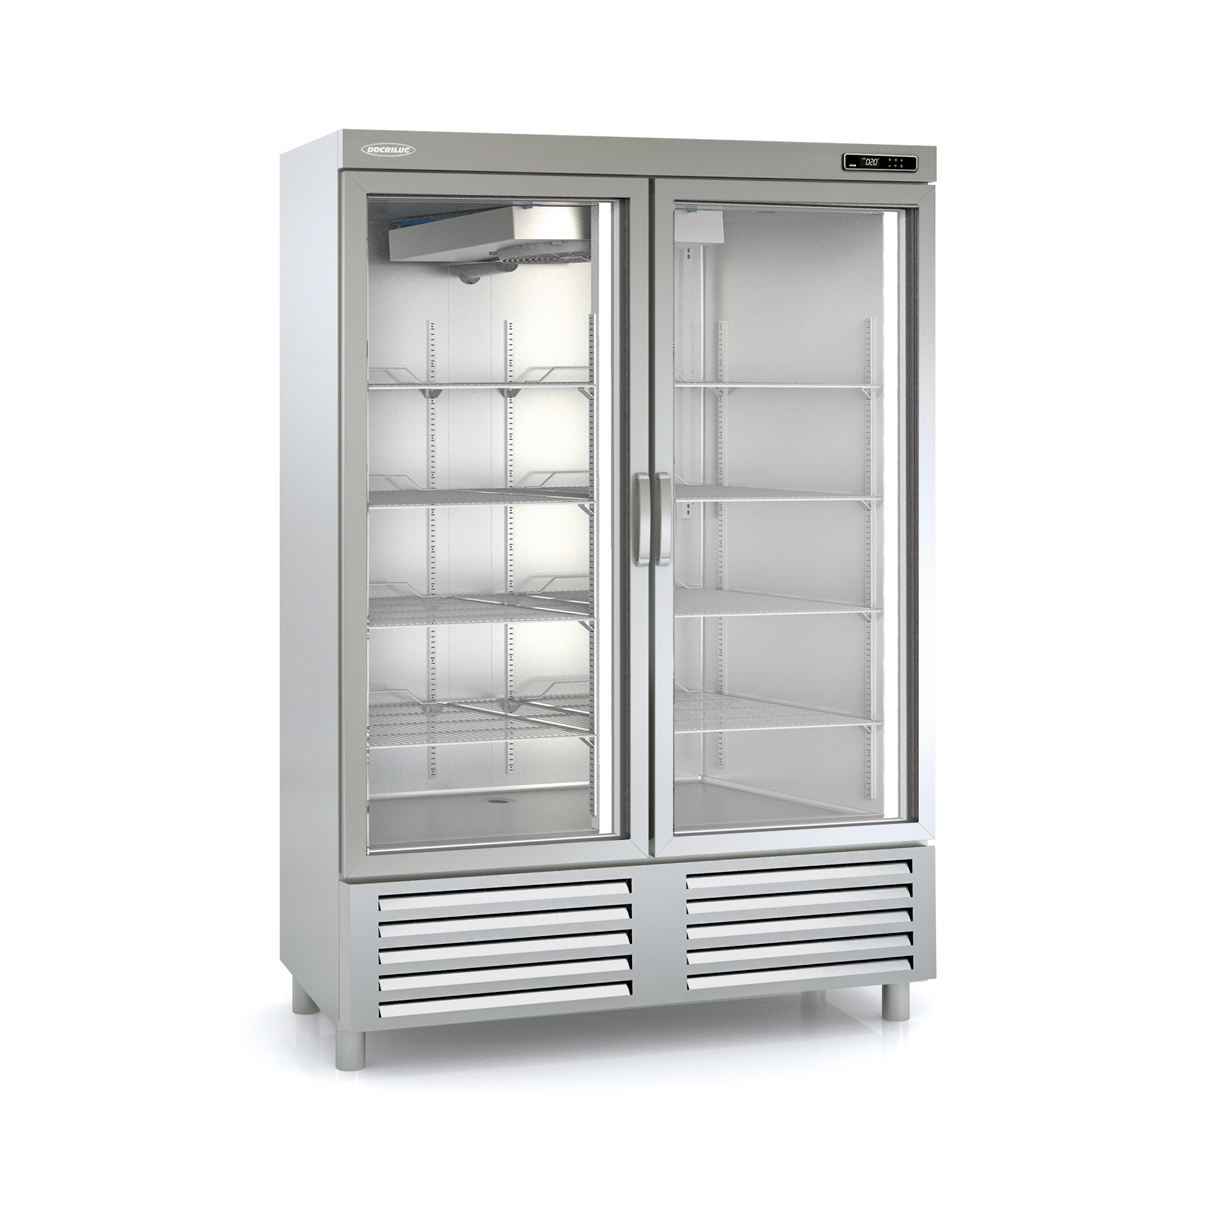 Snack Freezing Cabinet ACSV-140-2